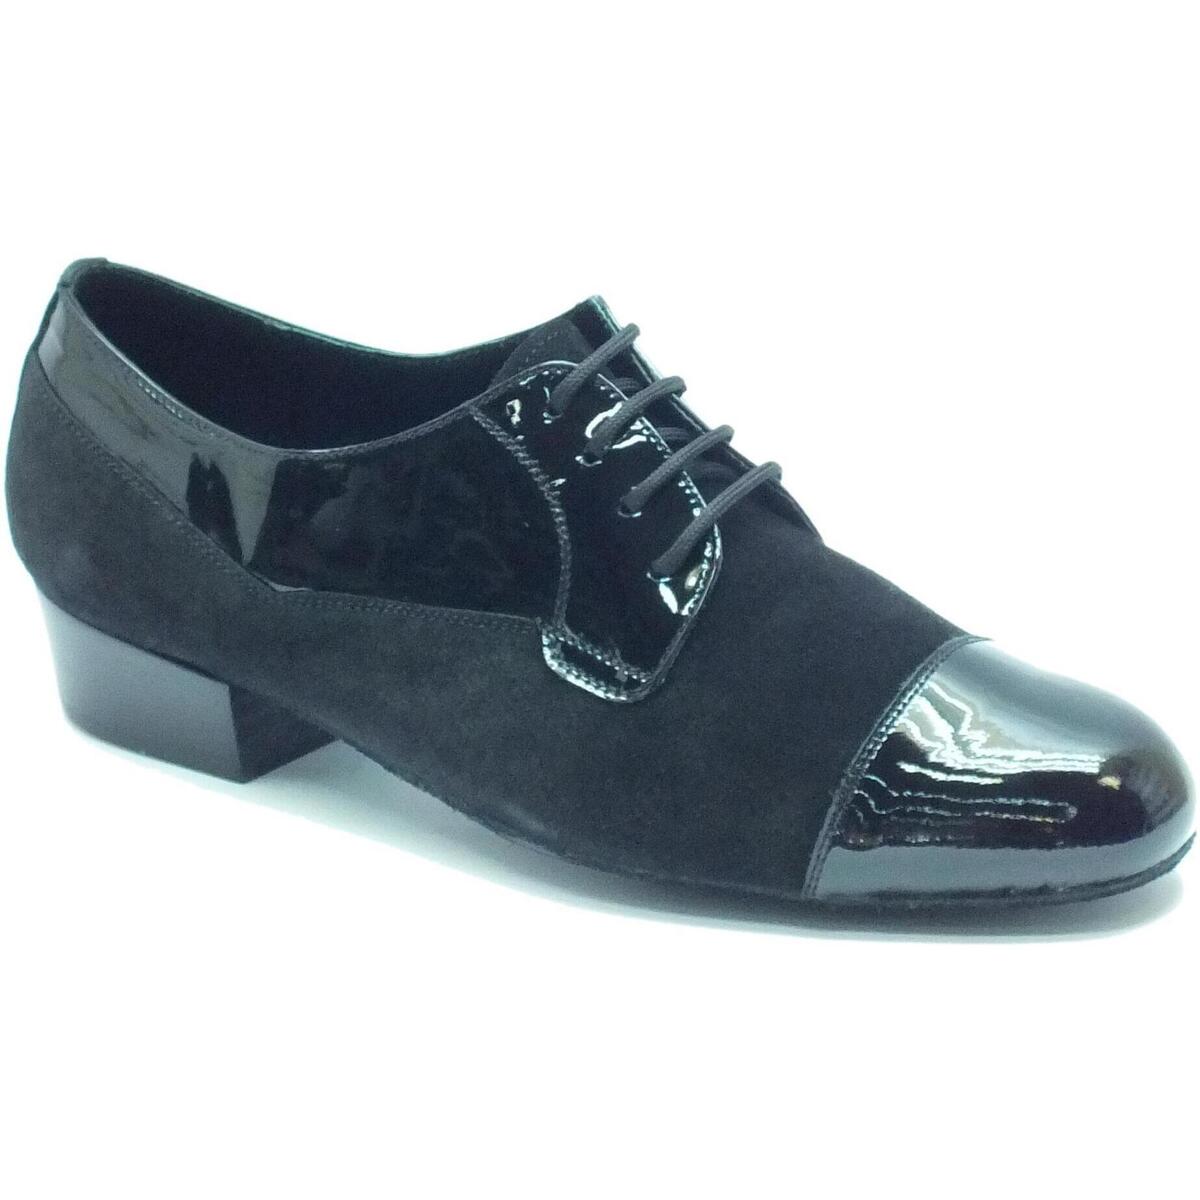 Scarpe Uomo Sandali sport Vitiello Dance Shoes Standard Camoscio e Verniciato Nero